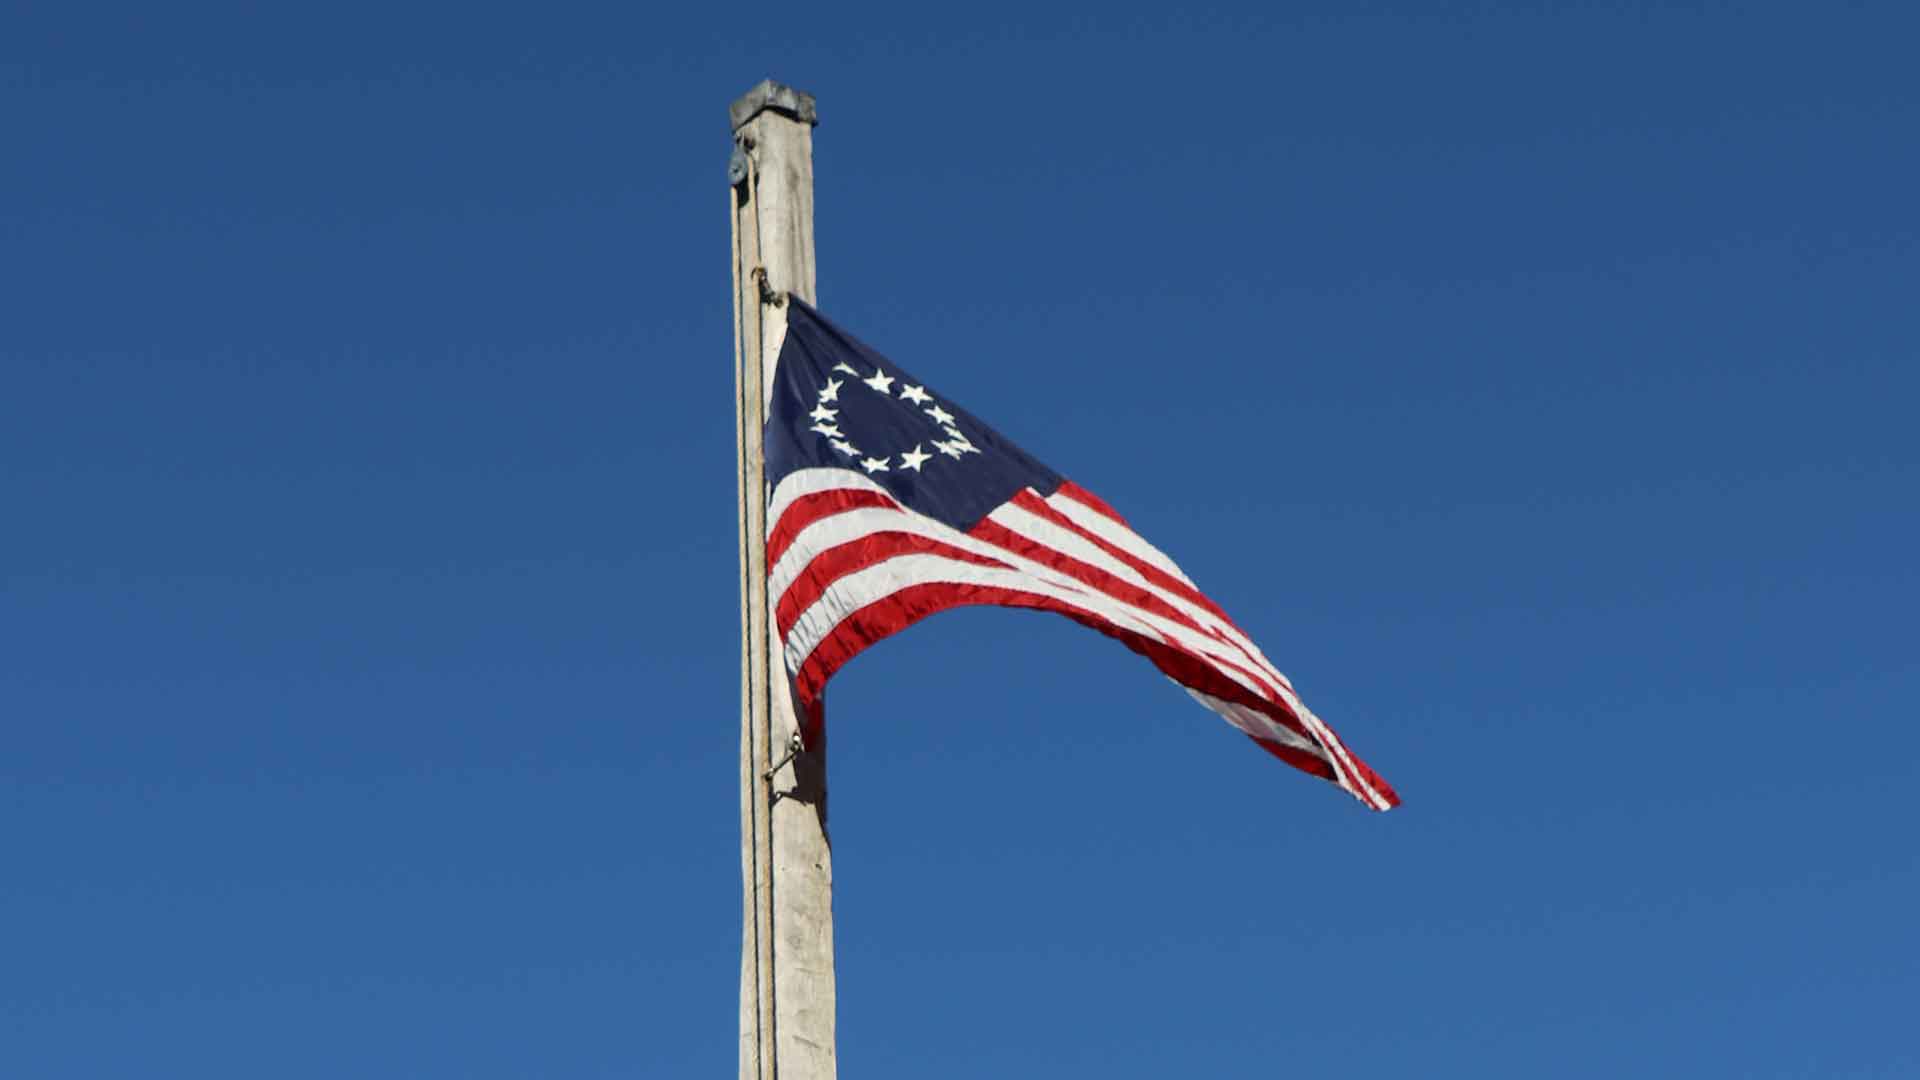 Revolutionary War era American Flag